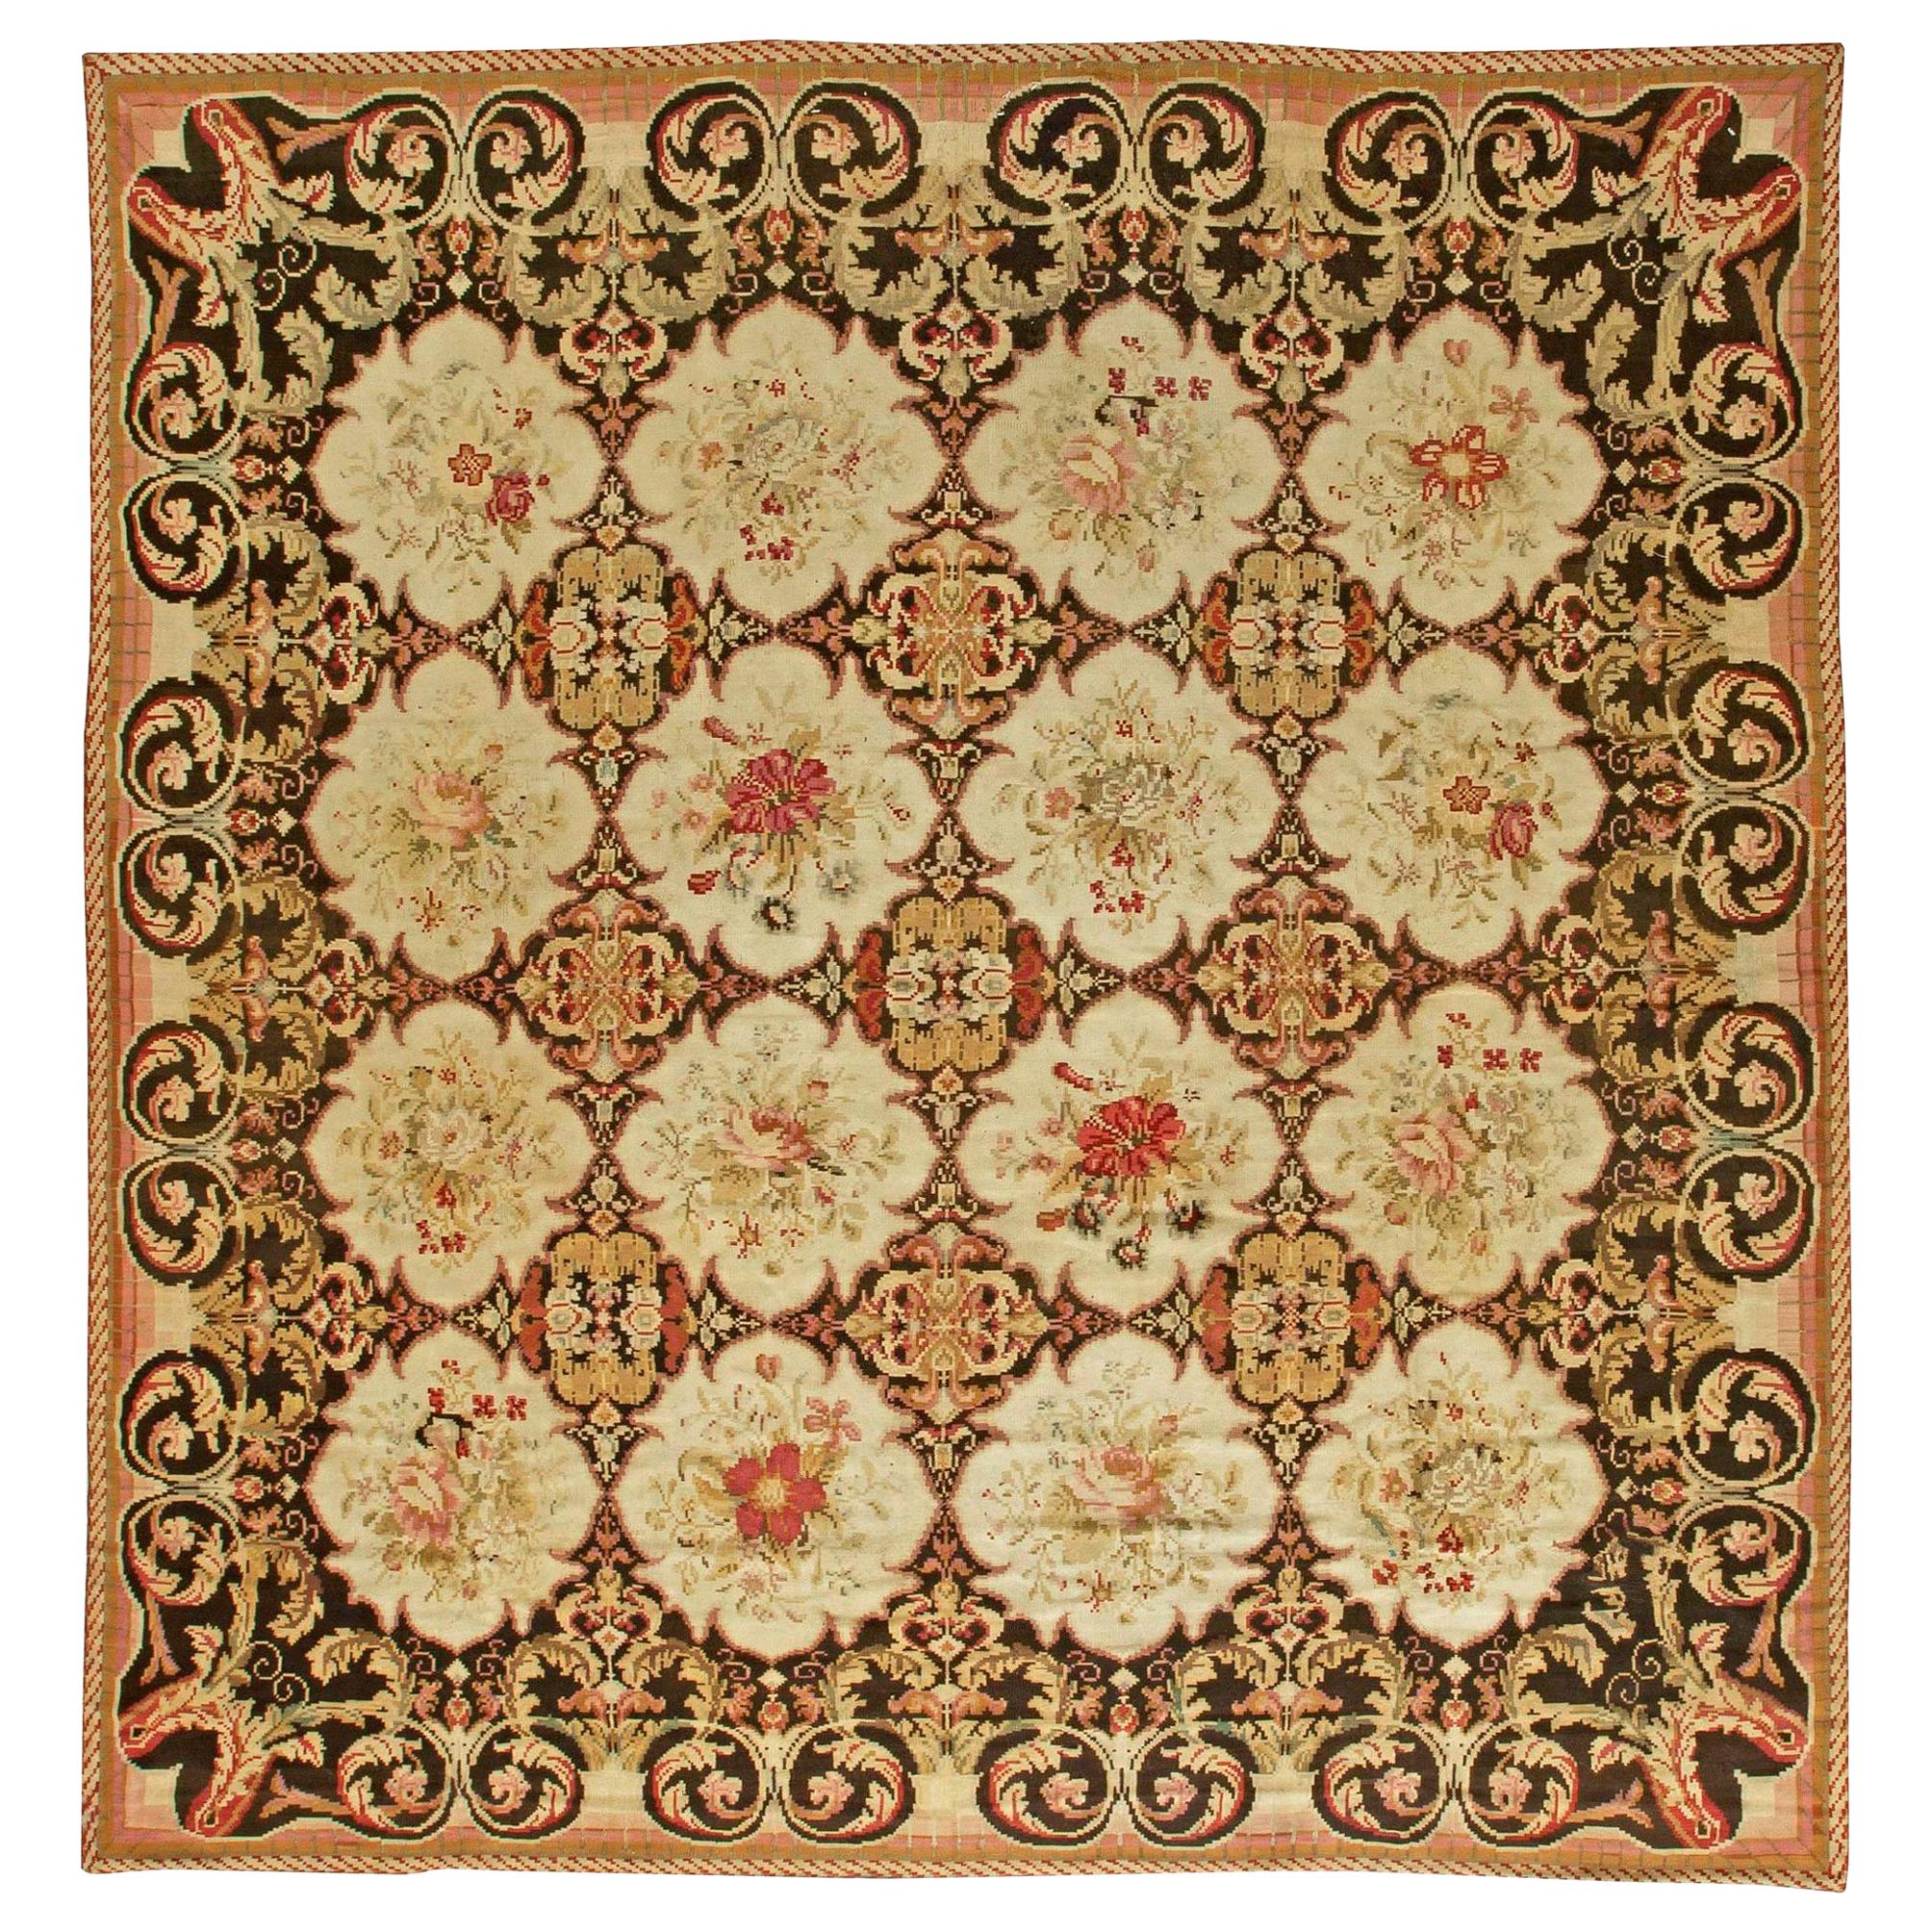 Authentischer handgefertigter bessarabischer Teppich aus dem 19.